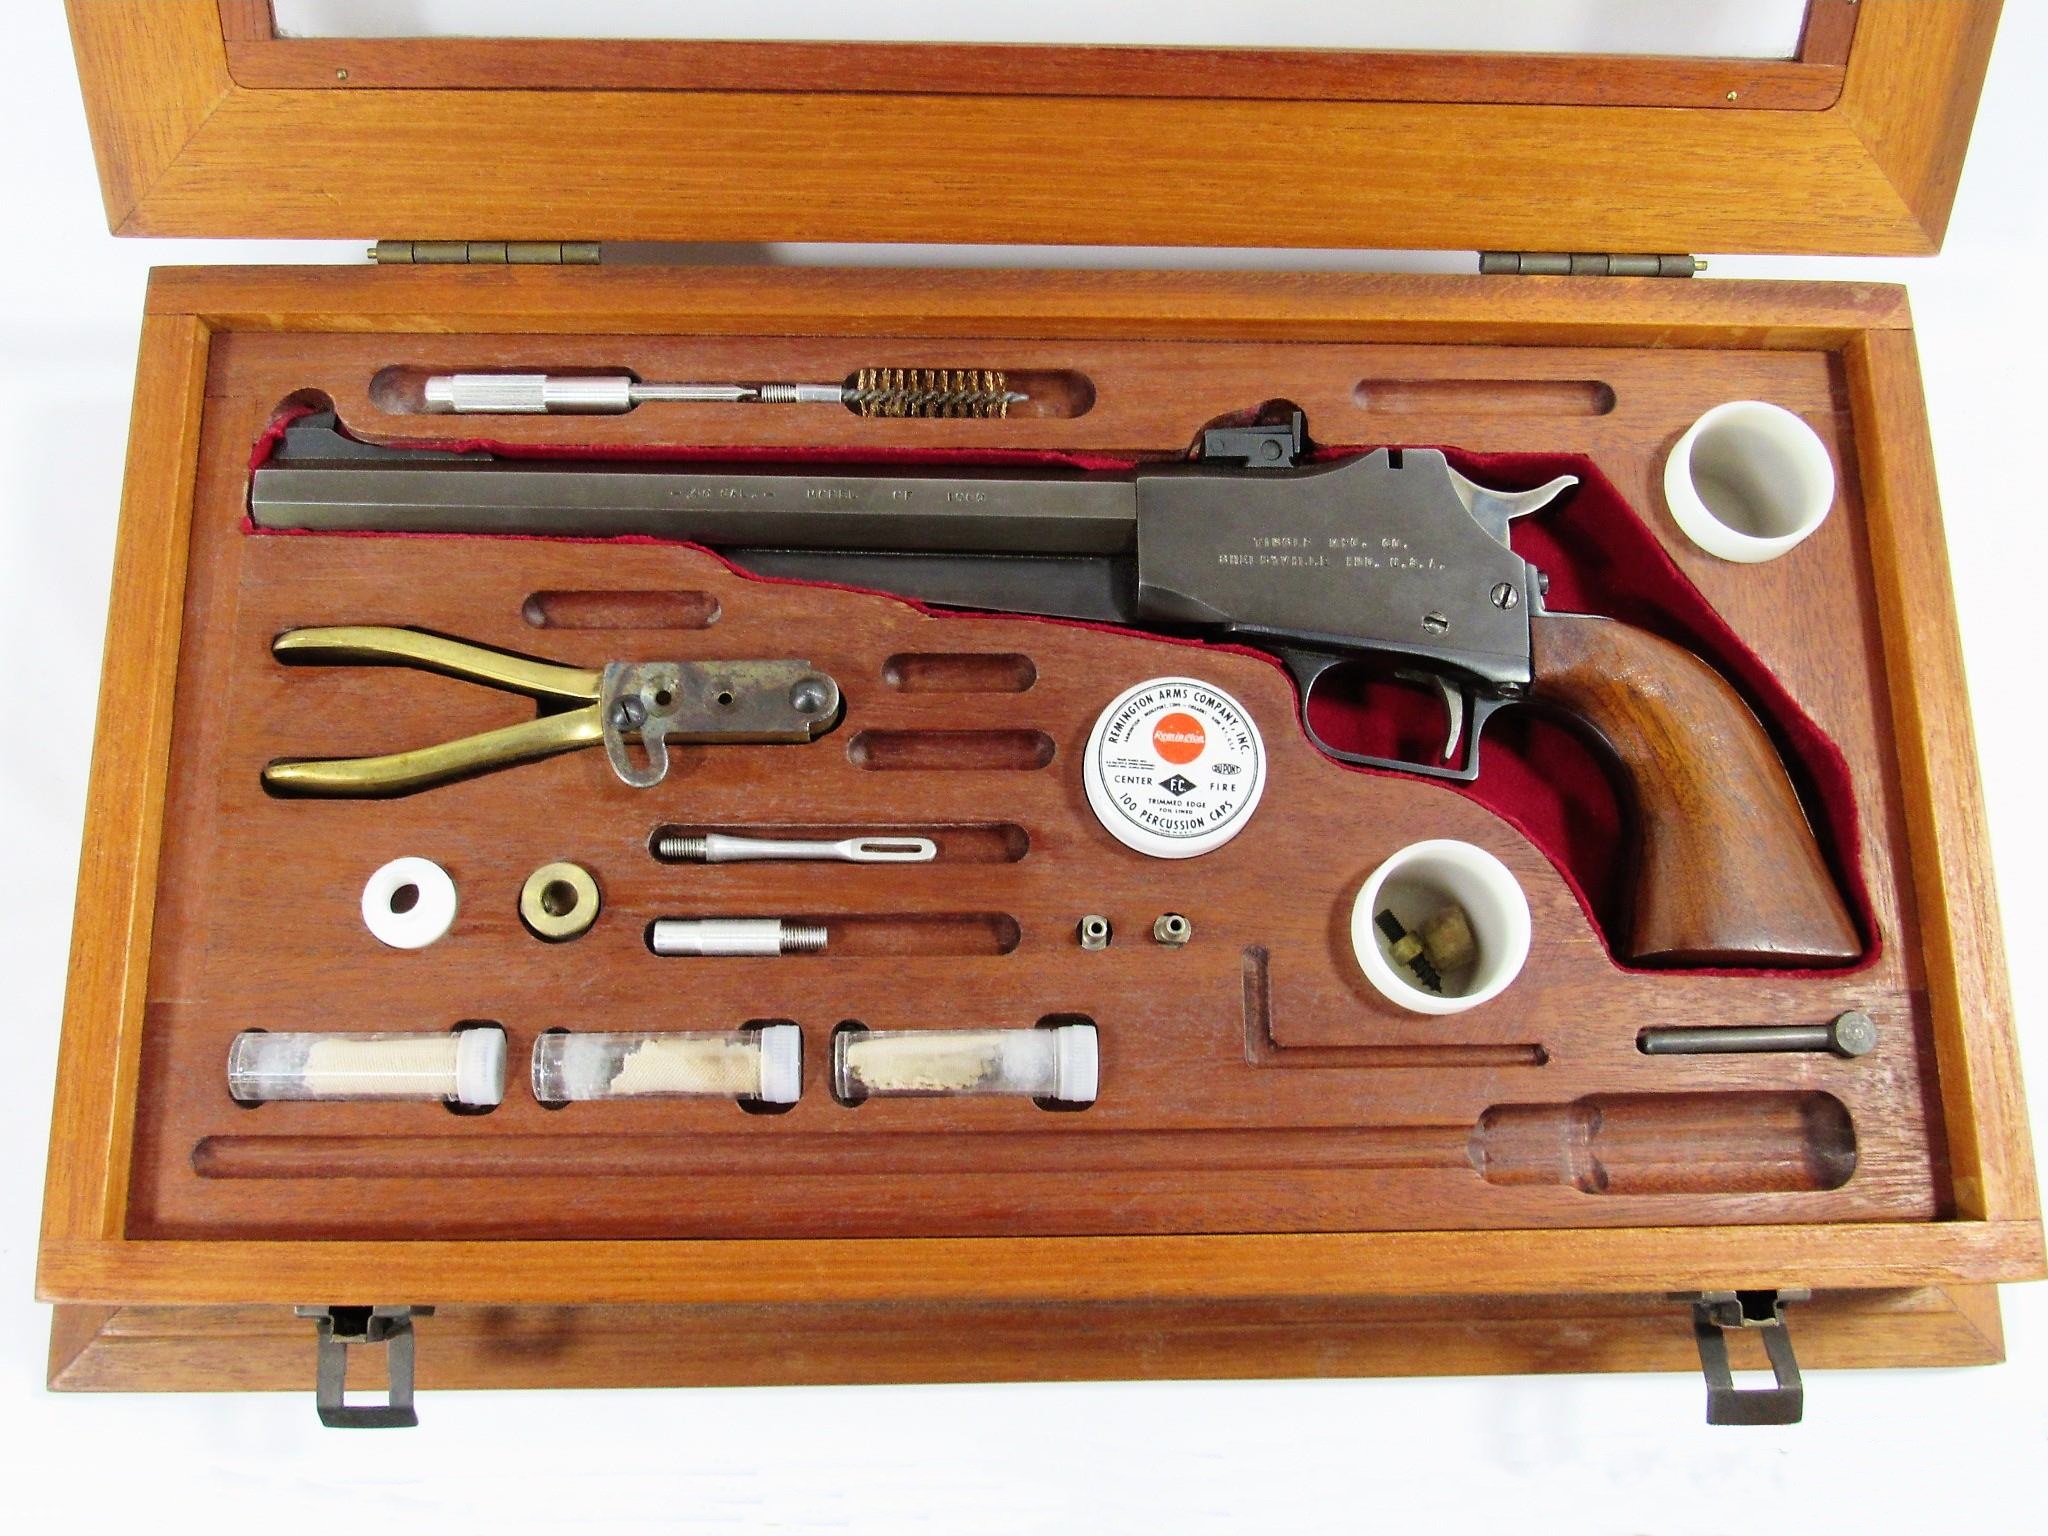 Présenté dans un coffret en bois et accompagné par ses accessoires, ce pistolet arbore le marquage « TINGLE MFG. CO. SHELBYVILLE IND. U.S.A. ». Il porte le numéro de série « 197 ».